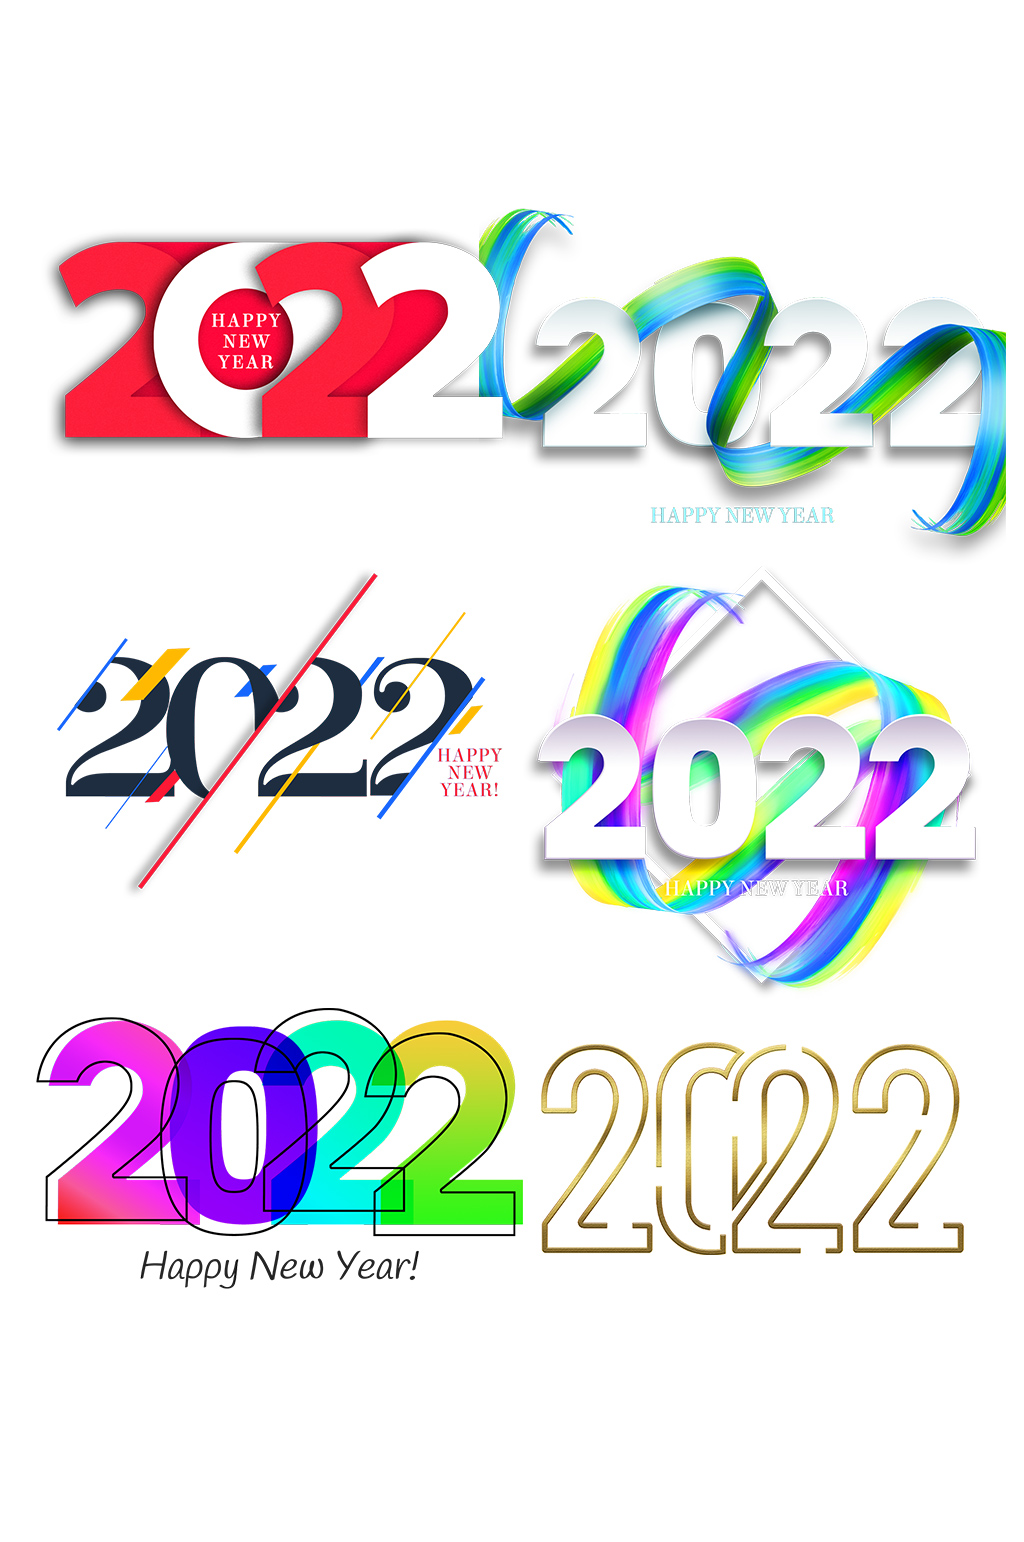 2022加粗字体图片